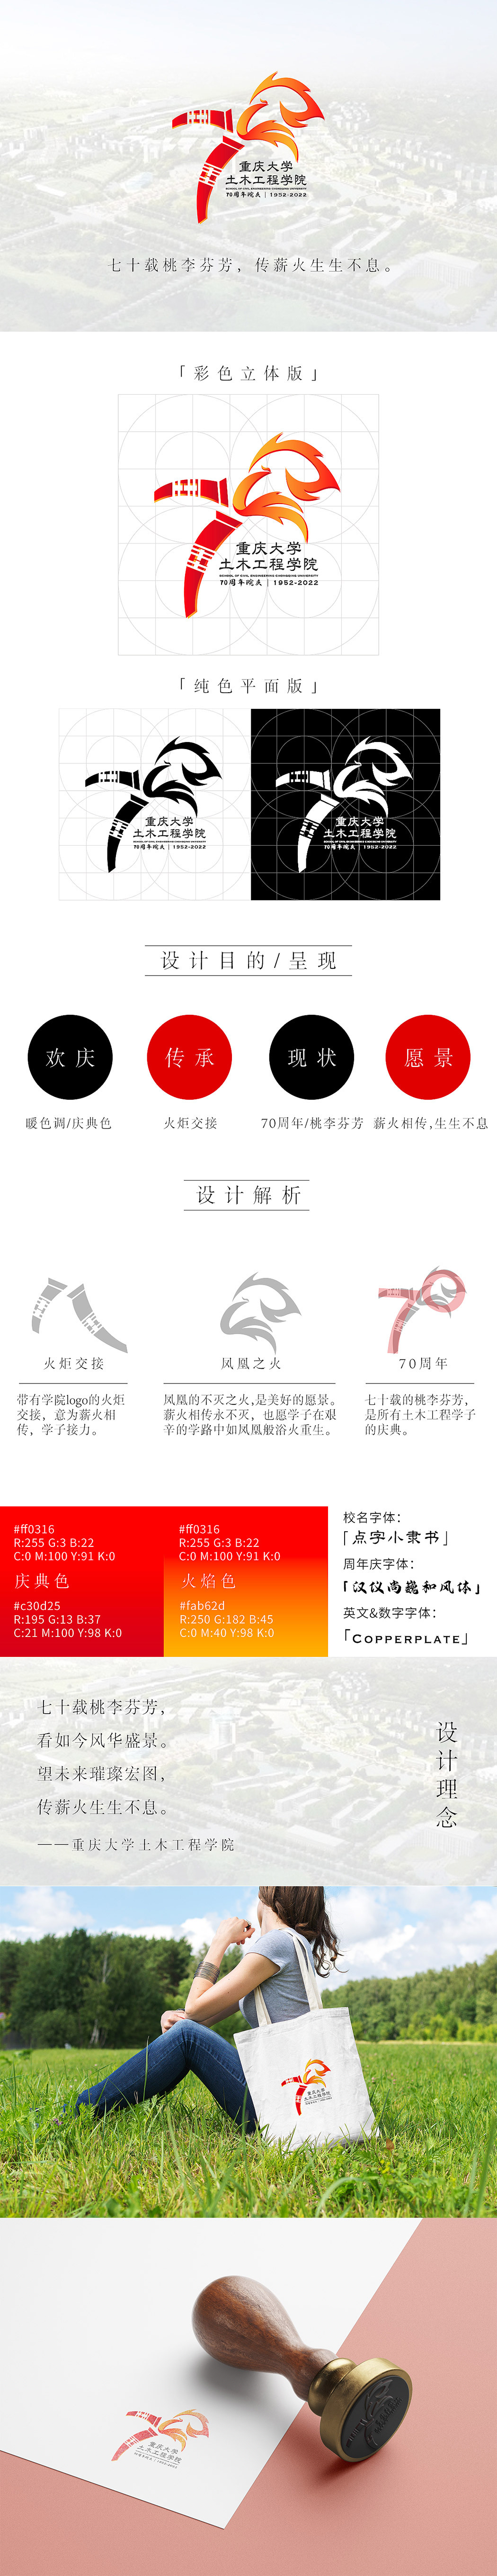 LOGO设计-重庆大学40周年校庆图0